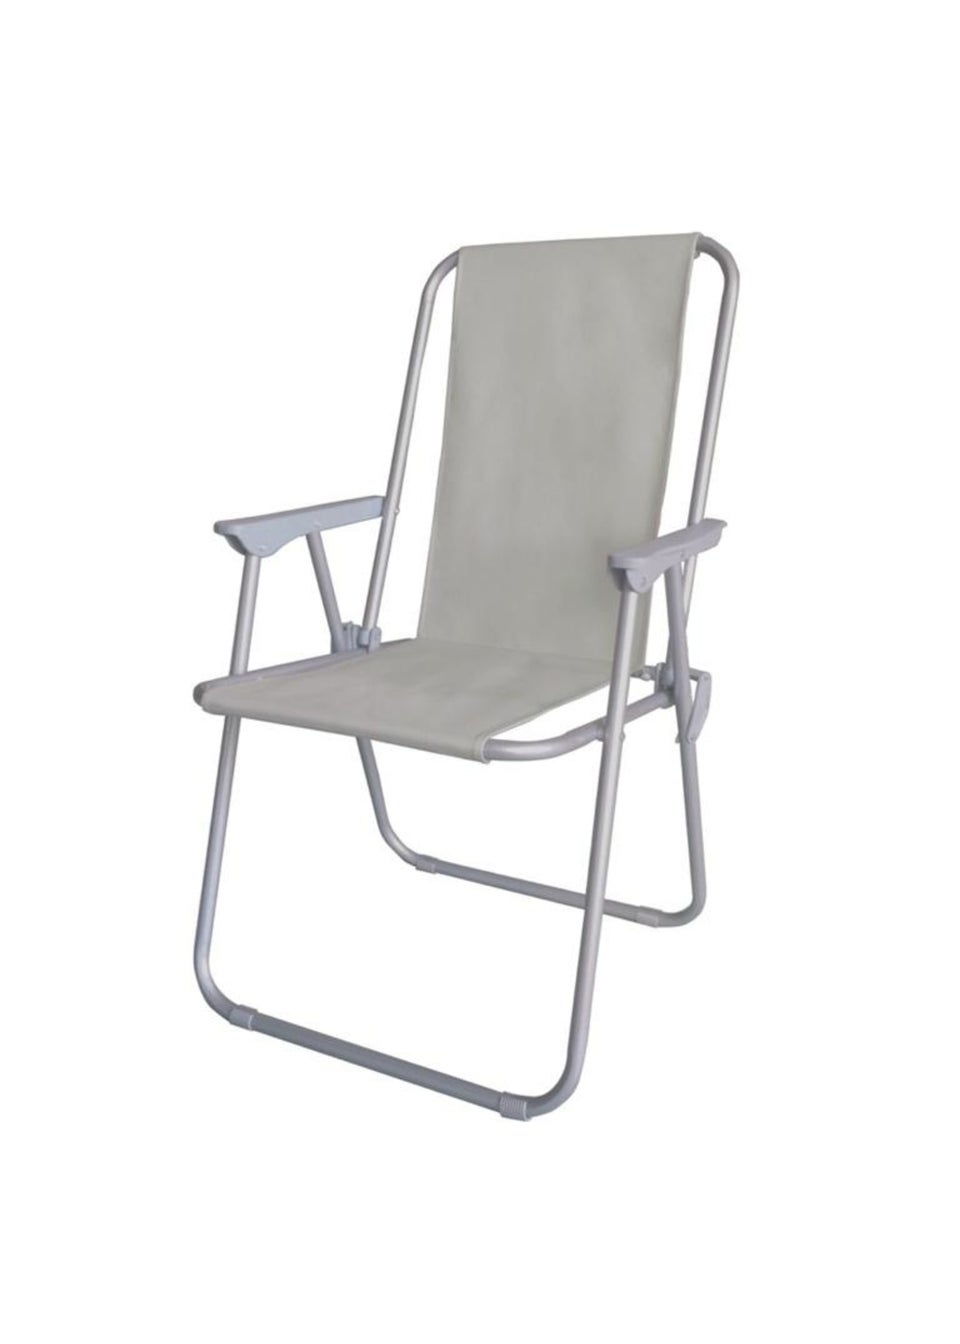 SupaGarden Grey Contract Folding Chair